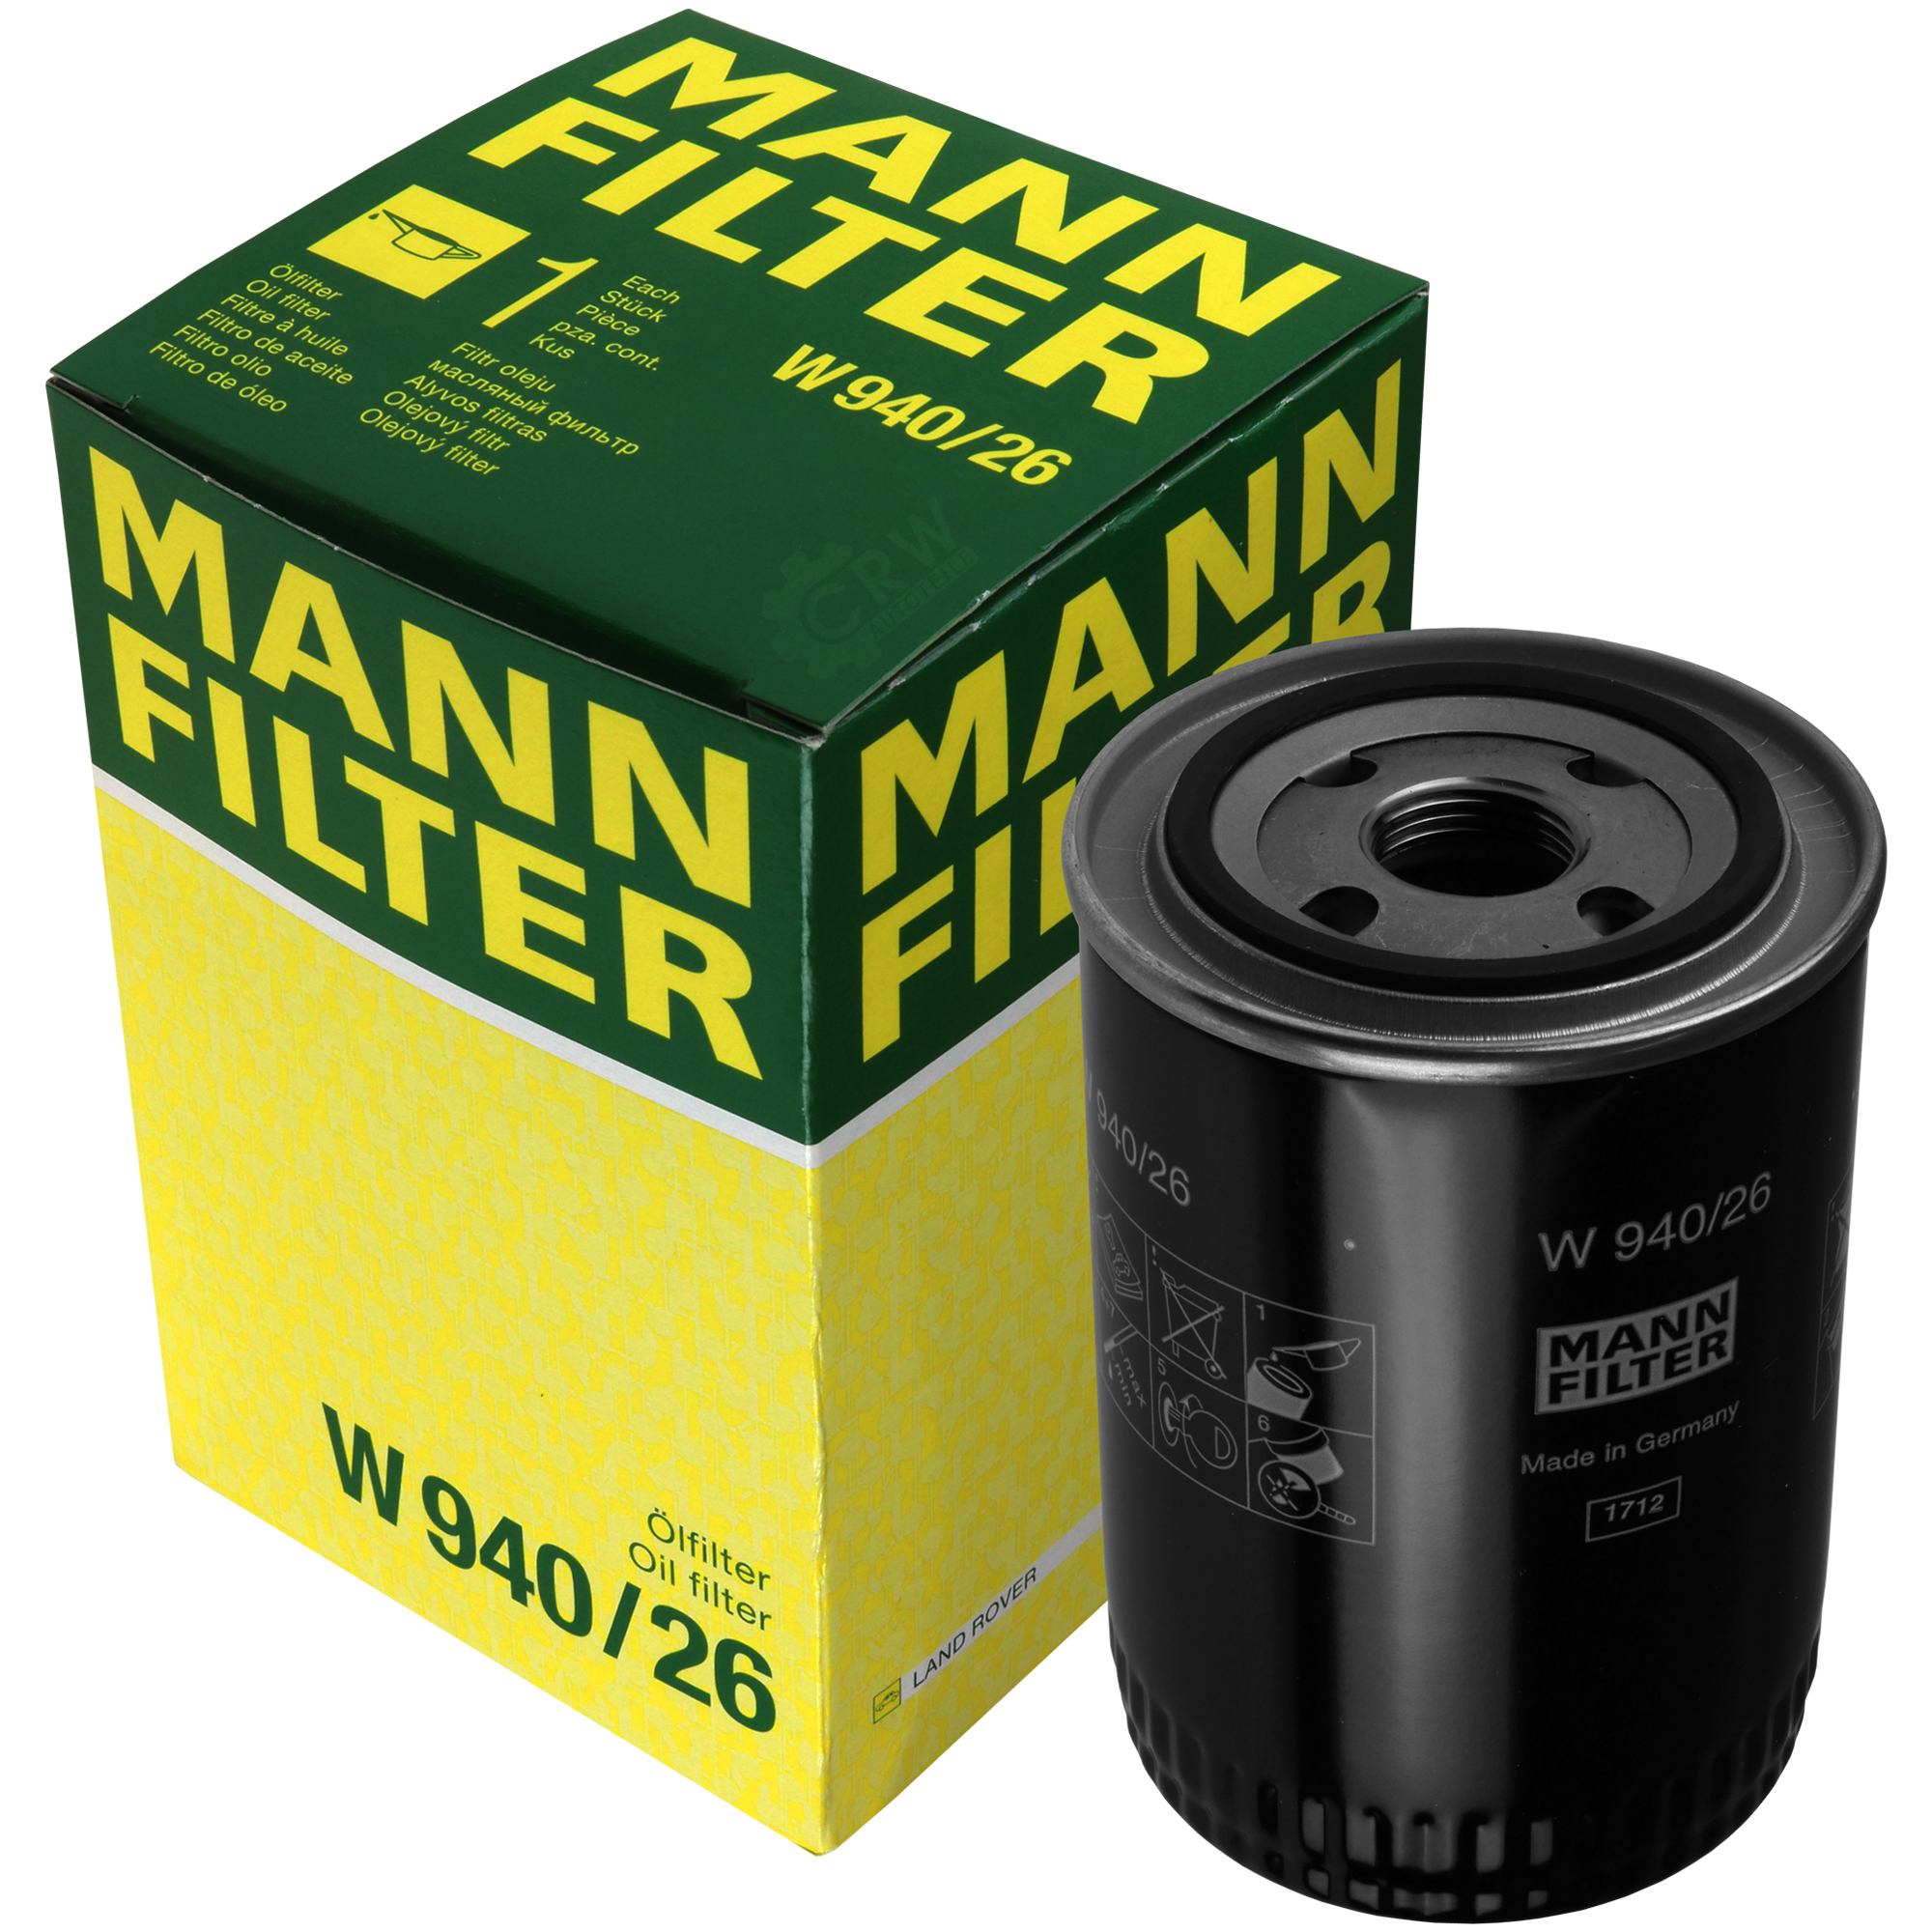 MANN-FILTER Ölfilter W 940/26 Oil Filter